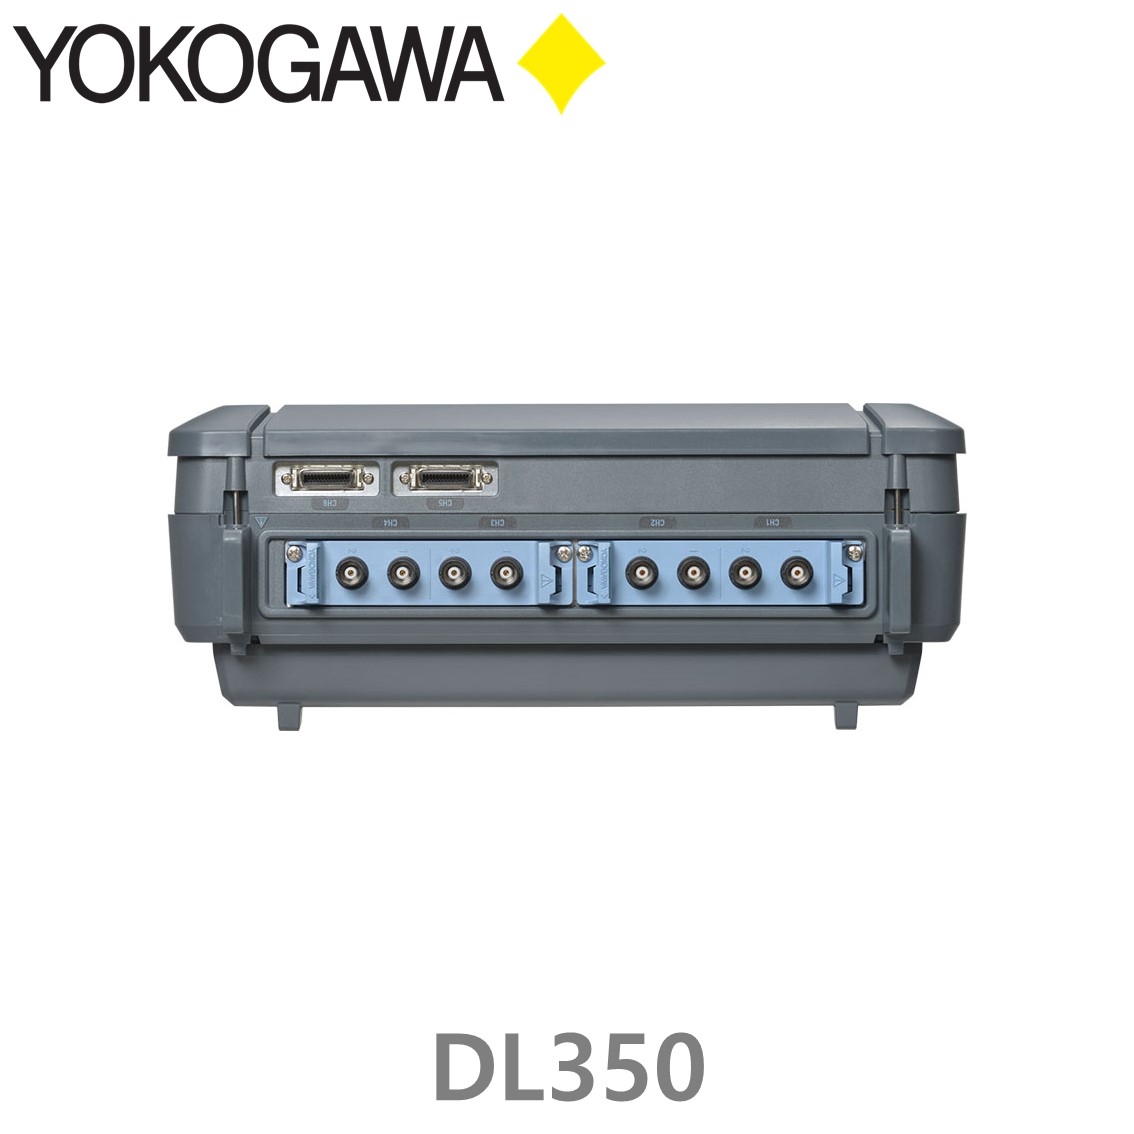 [ YOKOGAWA ] DL350 휴대용 스코프코더, 데이터로거